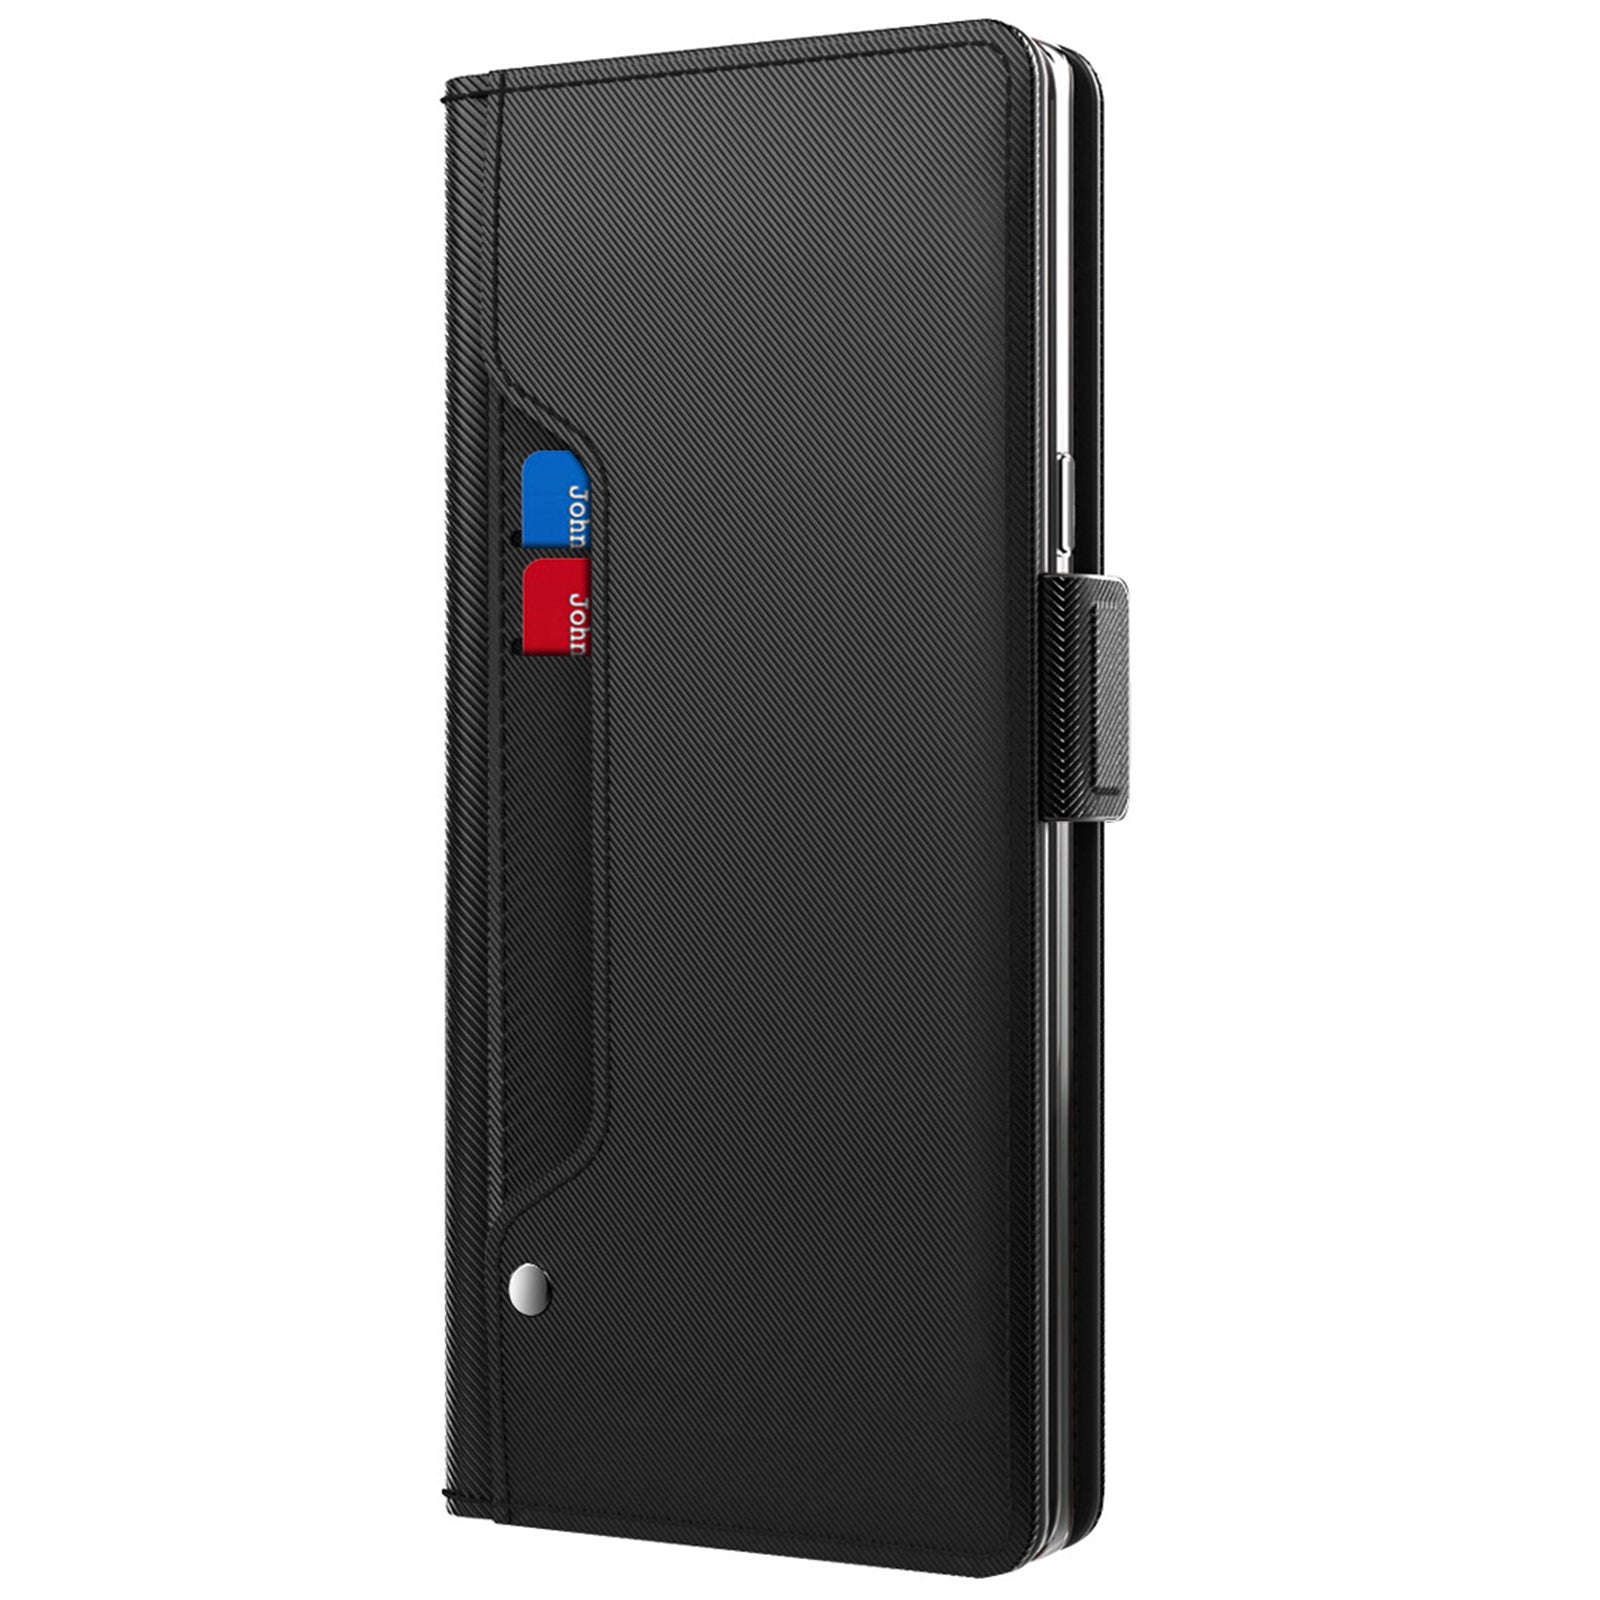 Uniqkart for Huawei Nova 11i Anti-scratch Card Holder Phone Cover PU Leather Stand Case Mirror Design Phone Shell - Black